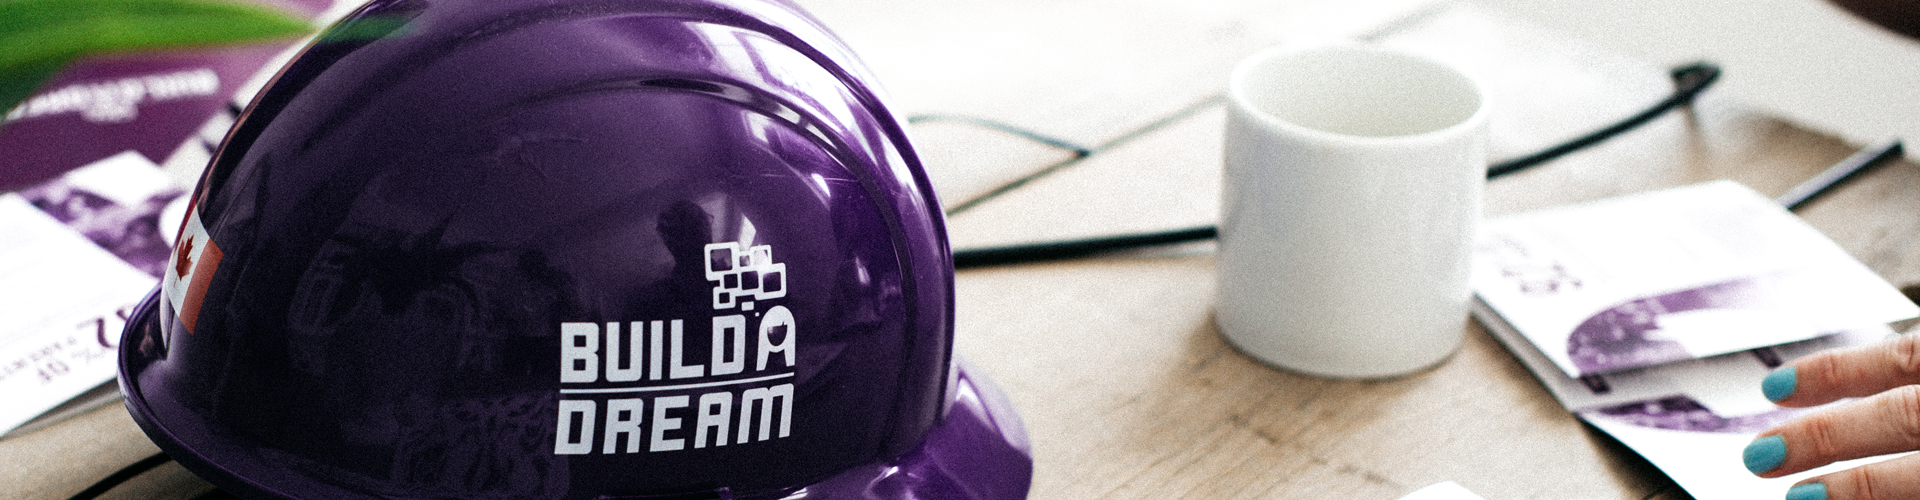 Build a Dream purple hard hats from WFS Ltd.